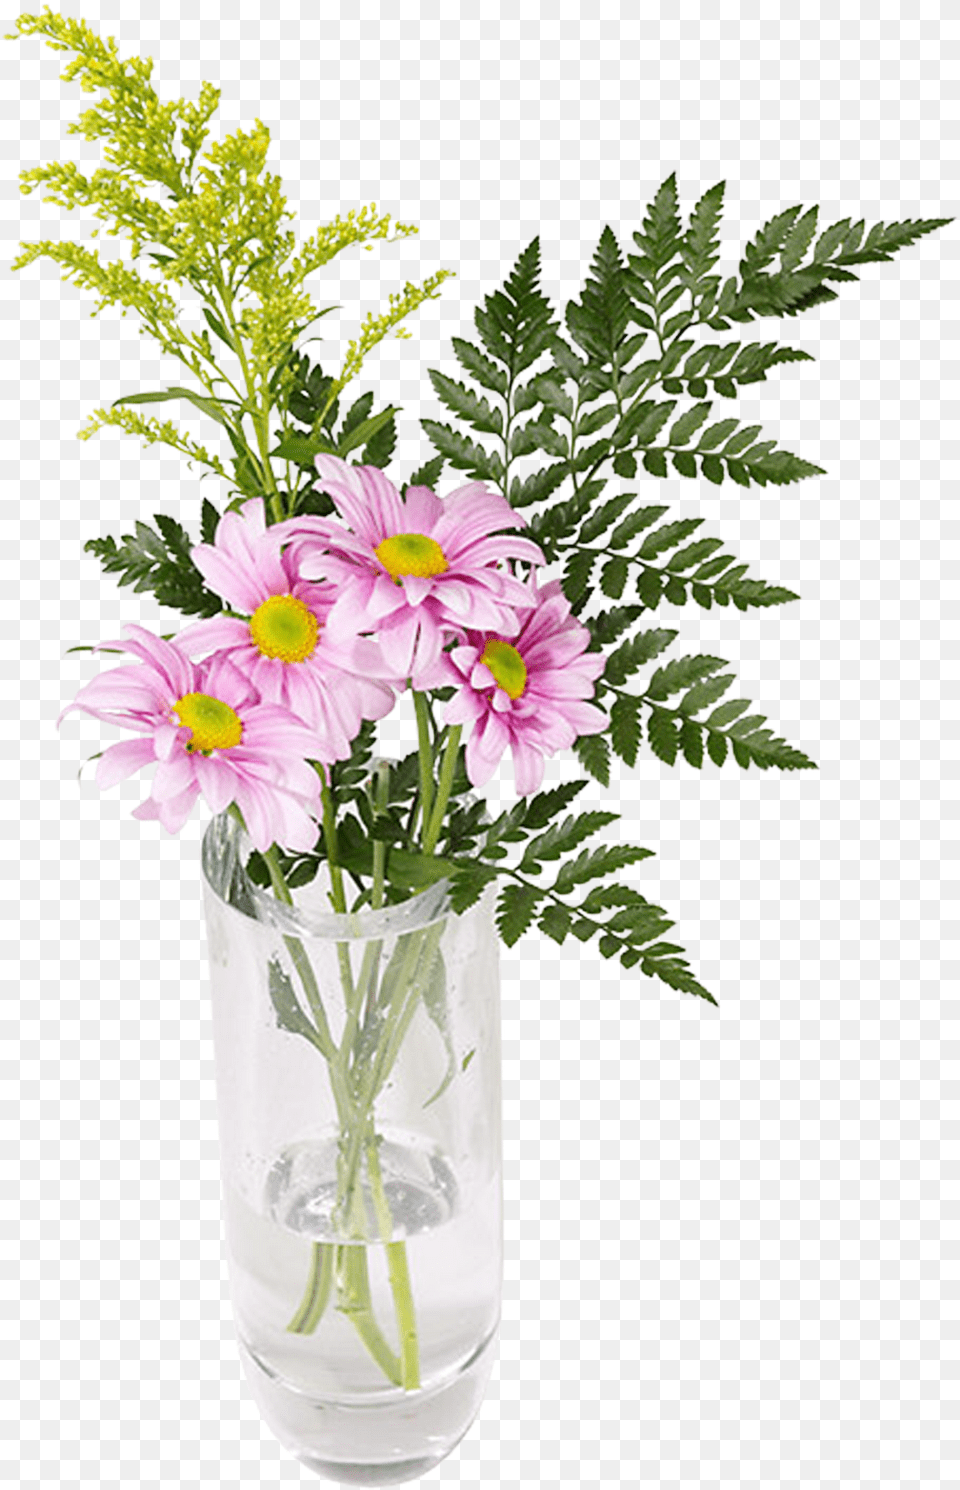 Imgenes De Arreglos Florales En Floreros Flower Bouquet, Vase, Pottery, Flower Arrangement, Flower Bouquet Png